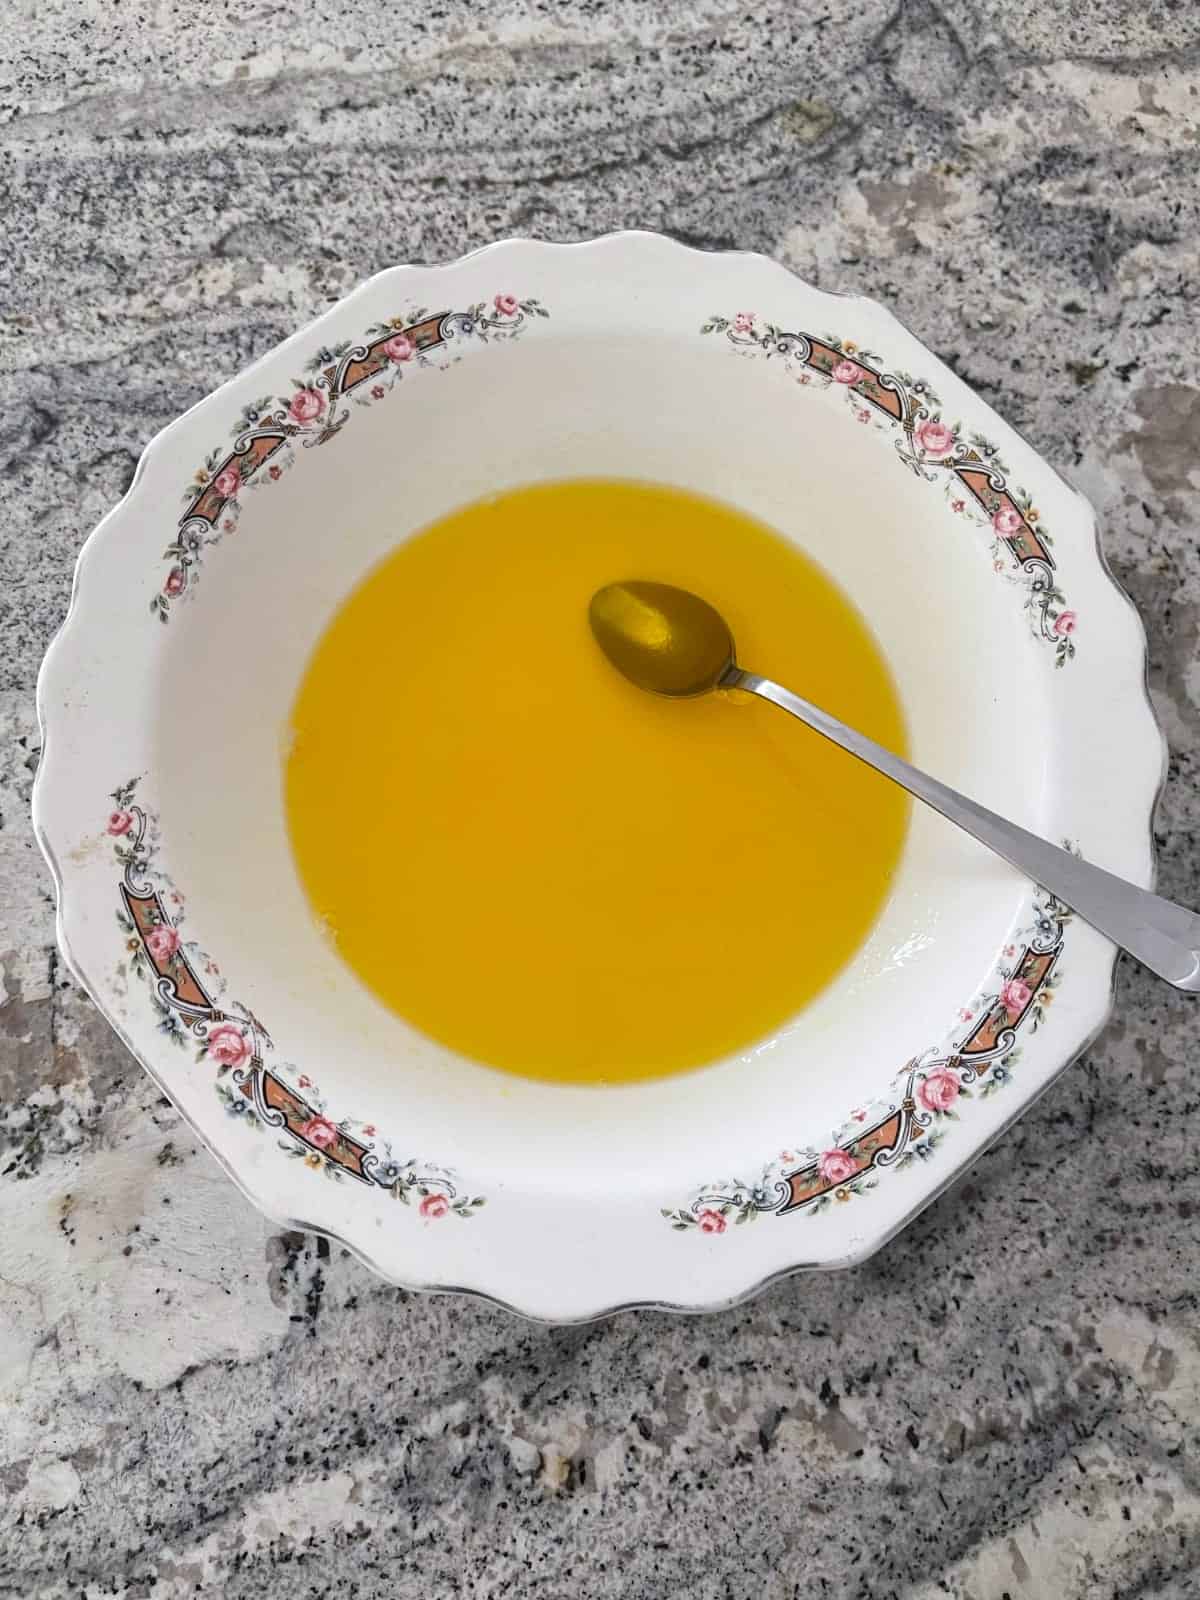 Dissolving lemon Jello in boiling water in white bowl.